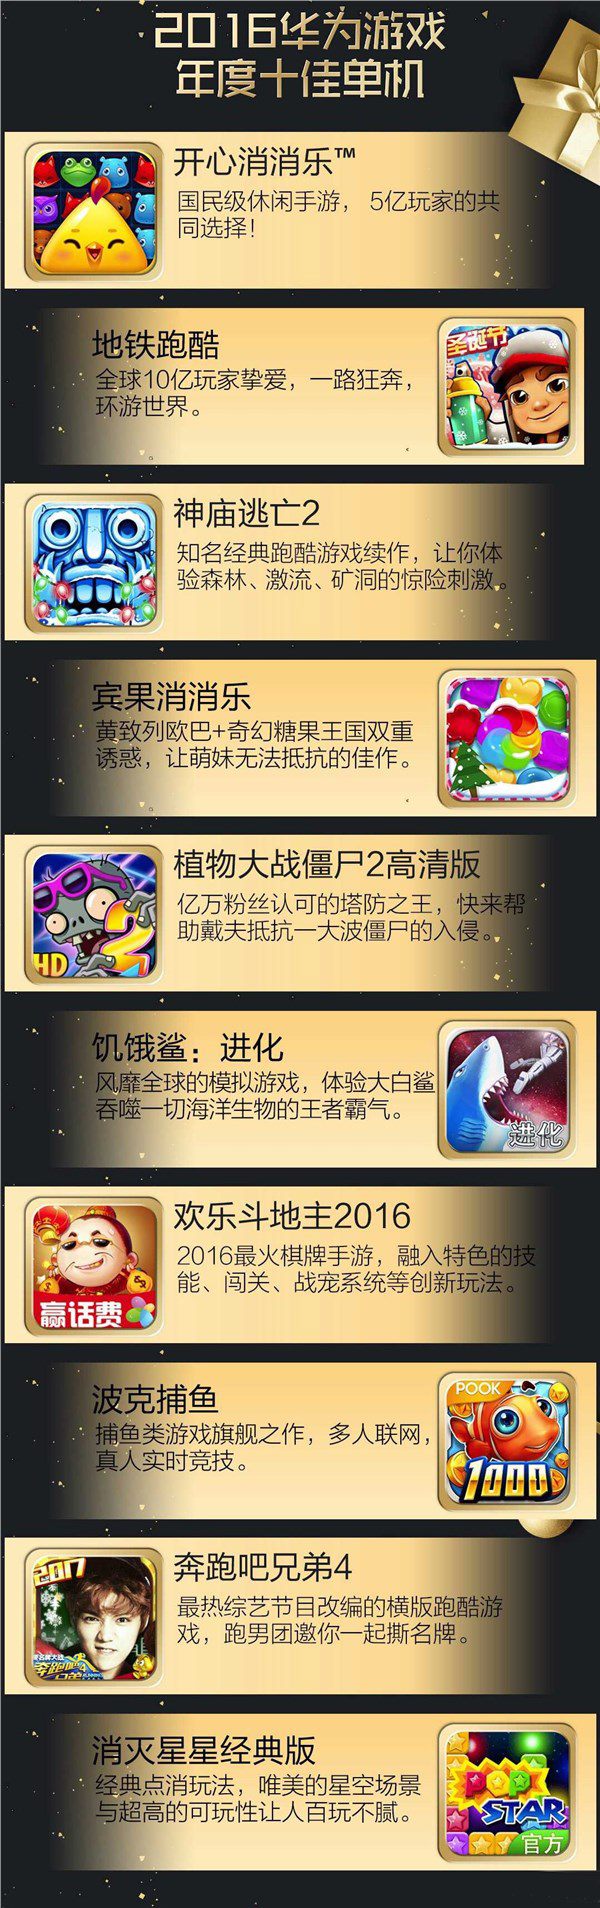 2016华为游戏年度风云榜揭晓